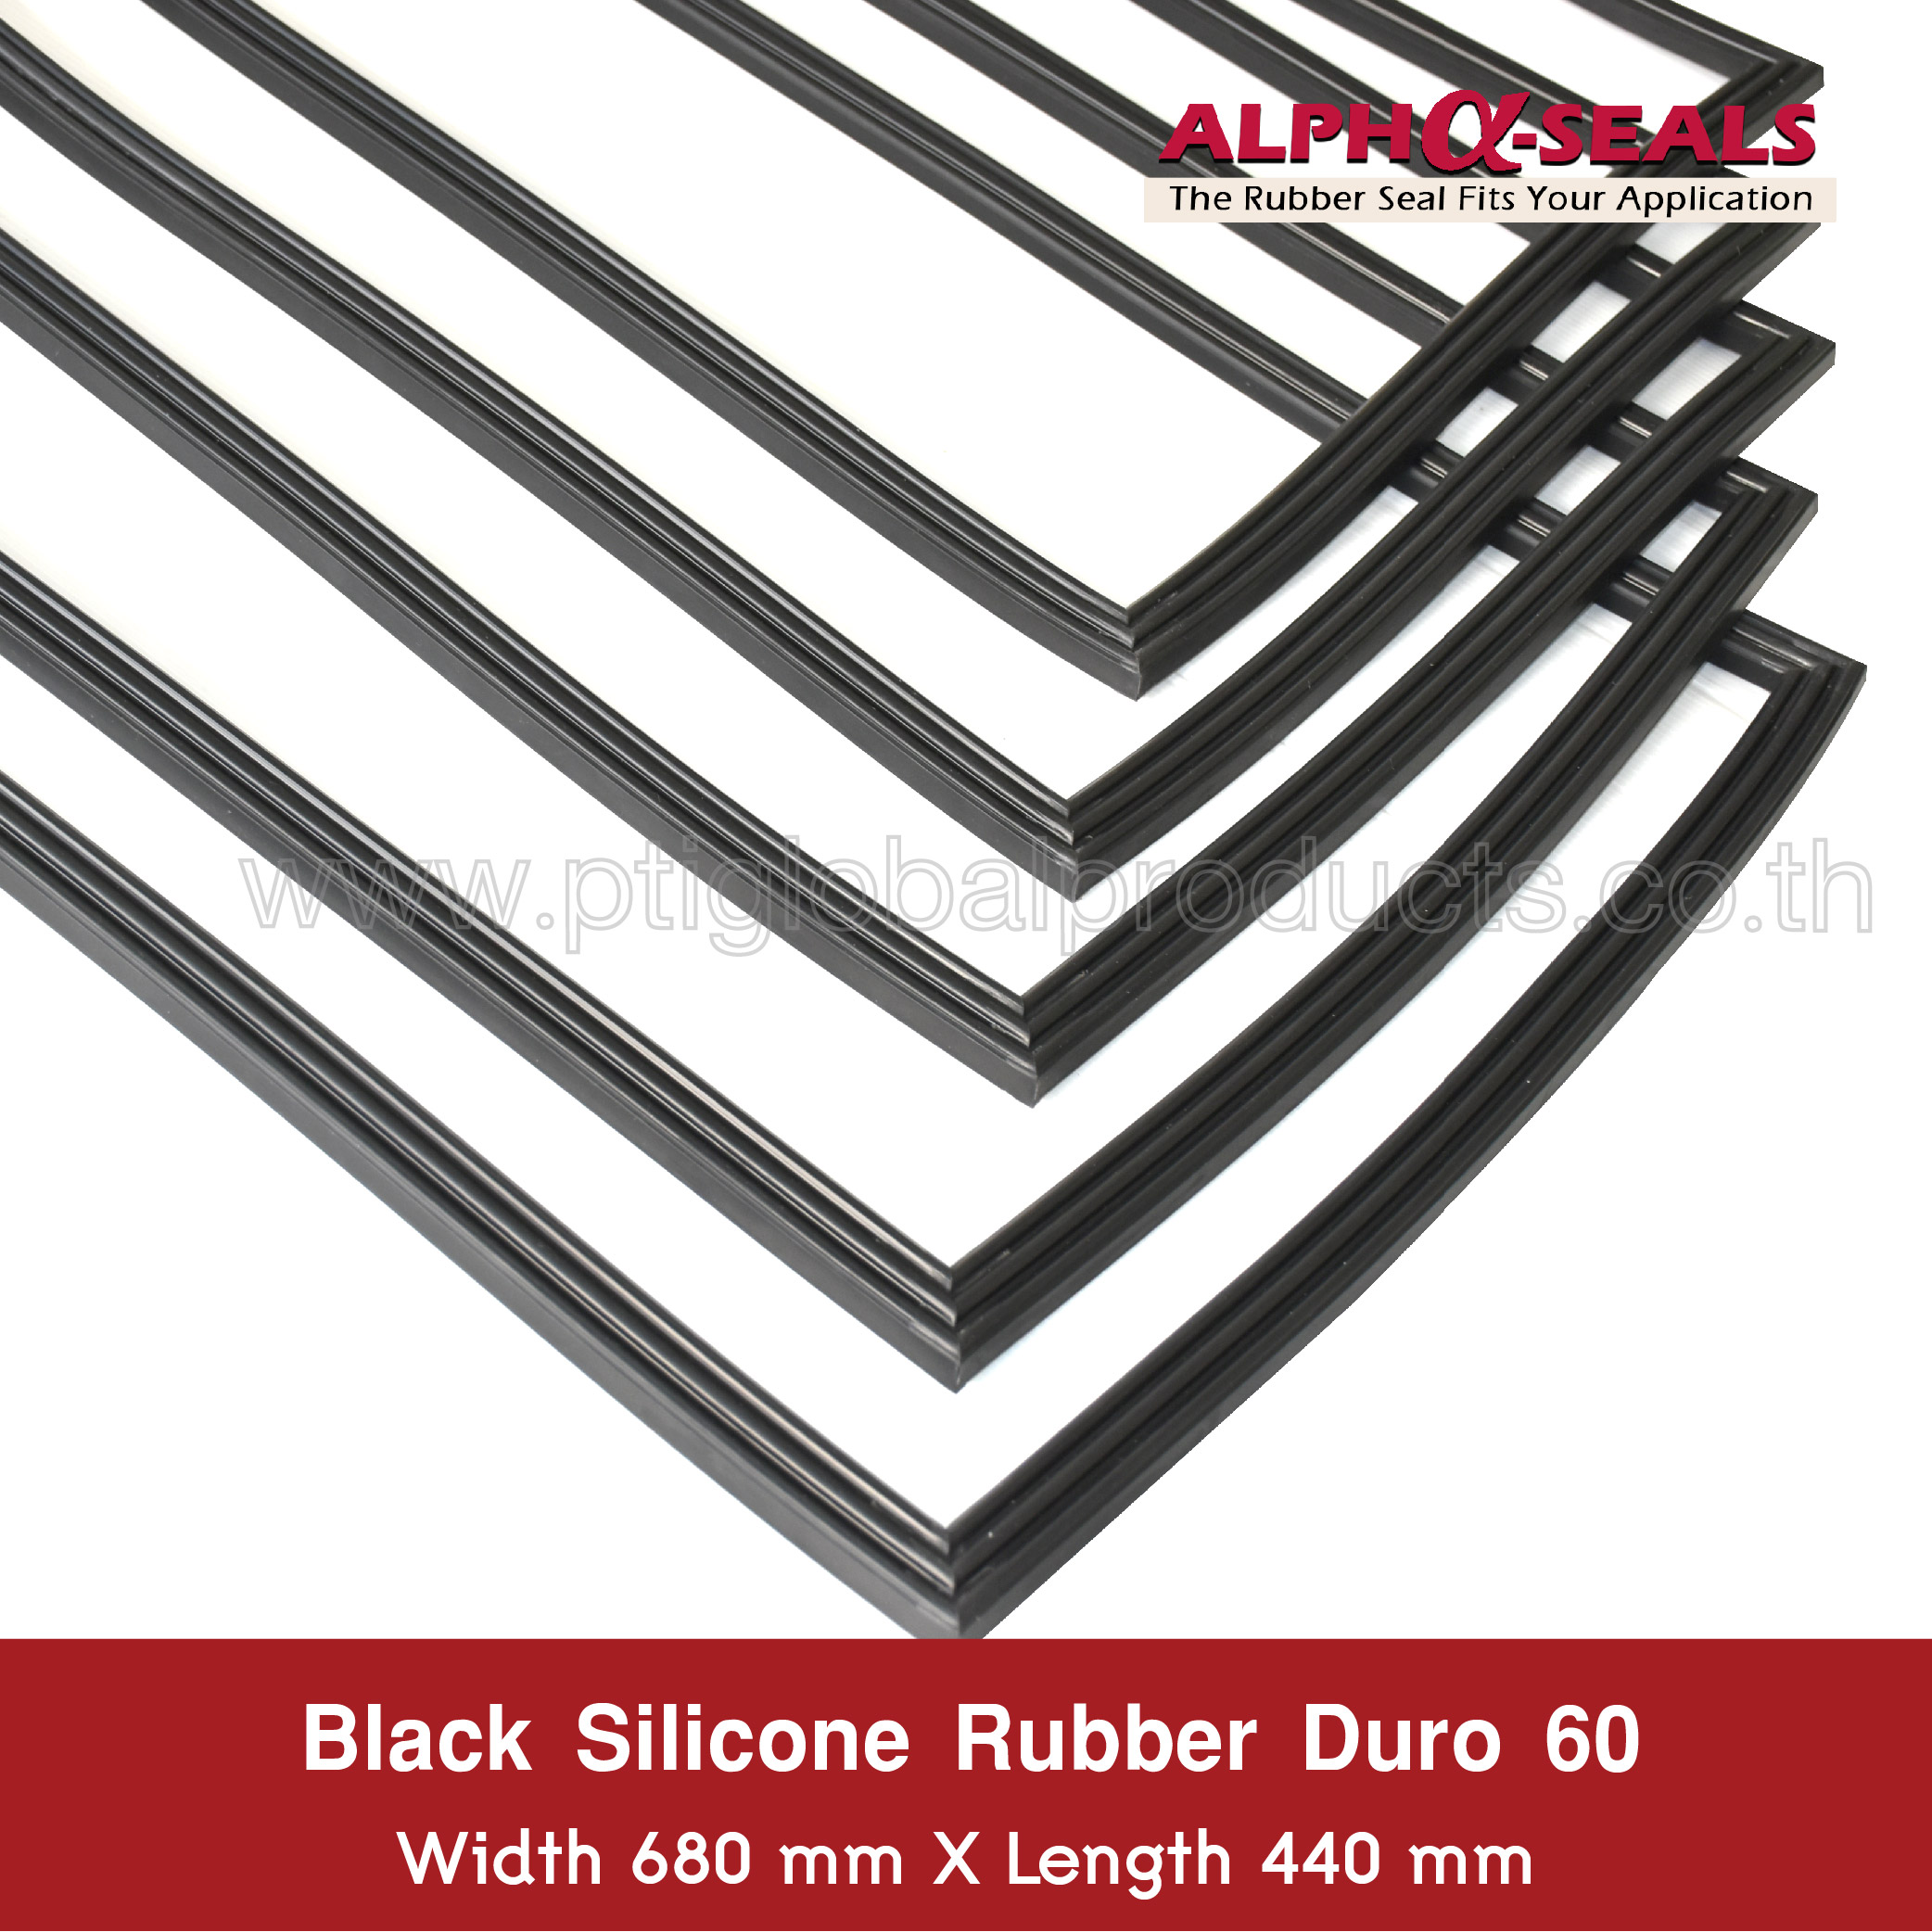 Black Silicone Rubber Duro 60